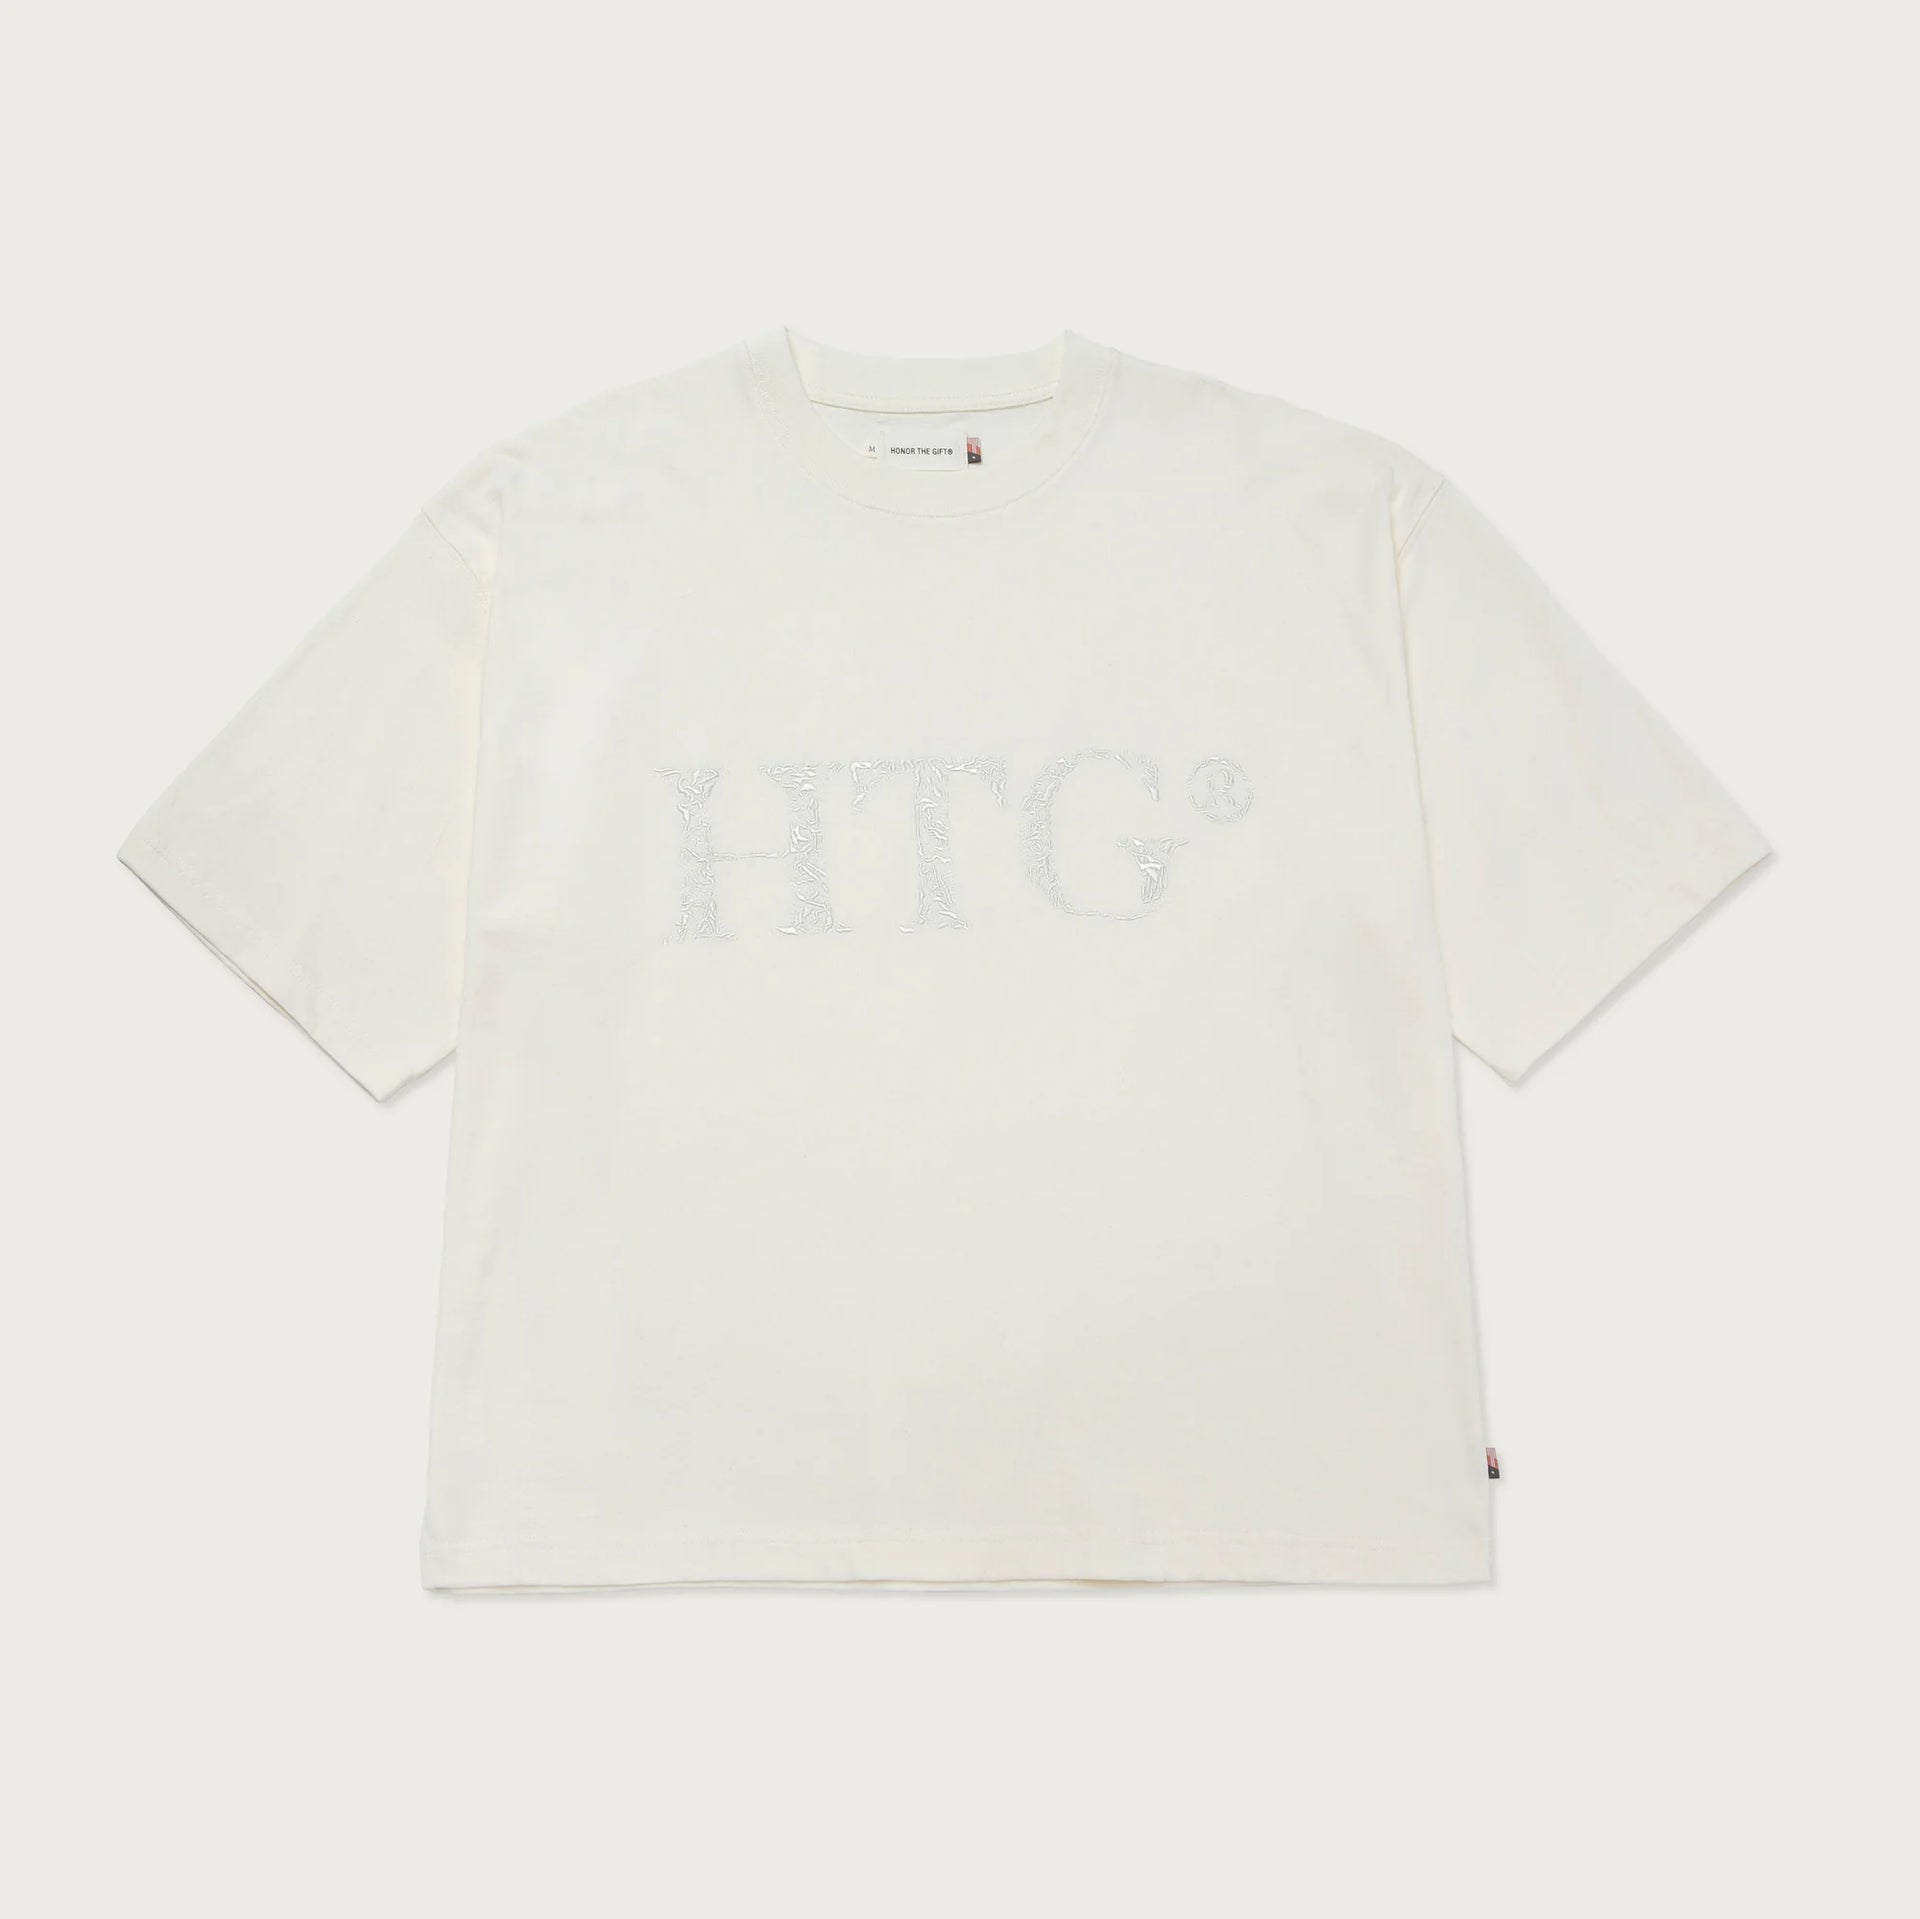 HTG Box T-Shirt - Bone